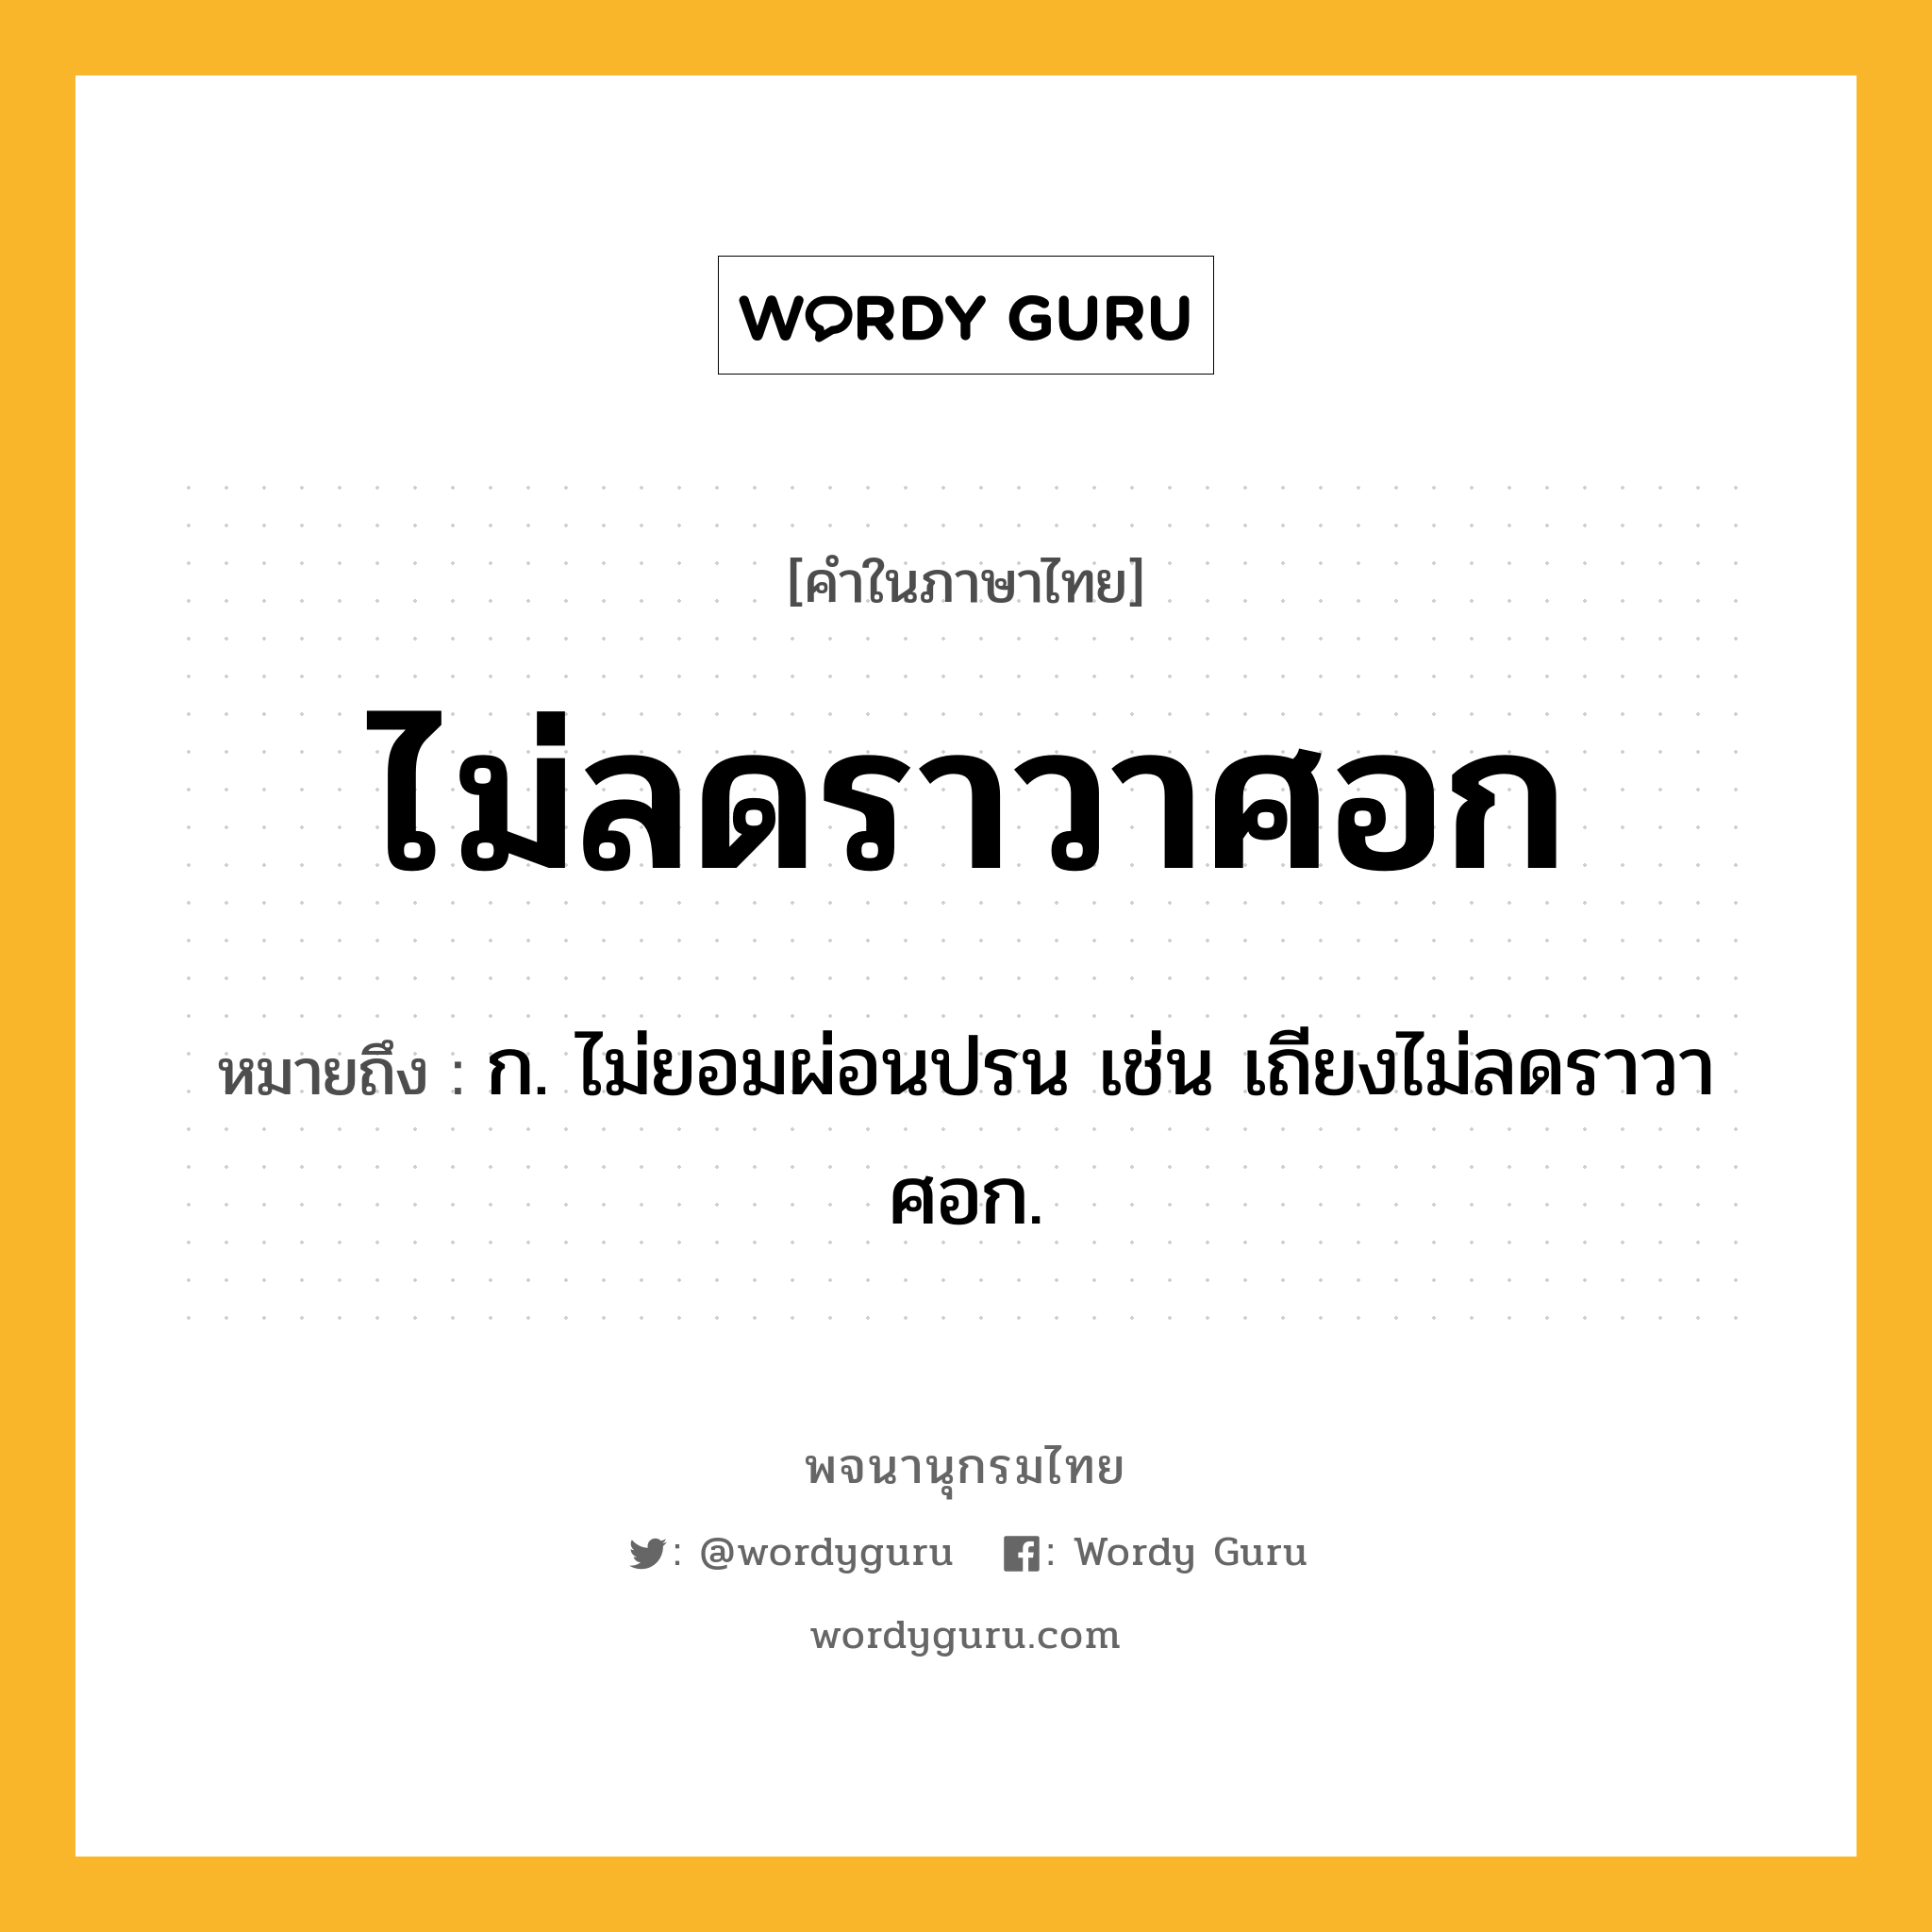 ไม่ลดราวาศอก หมายถึงอะไร?, คำในภาษาไทย ไม่ลดราวาศอก หมายถึง ก. ไม่ยอมผ่อนปรน เช่น เถียงไม่ลดราวาศอก.